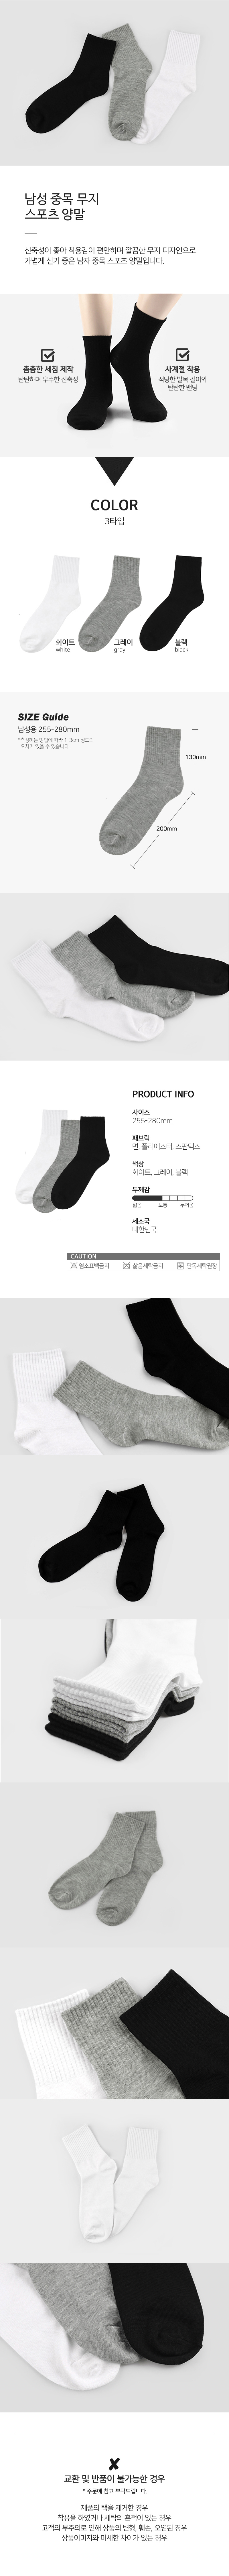 socks_00106.jpg